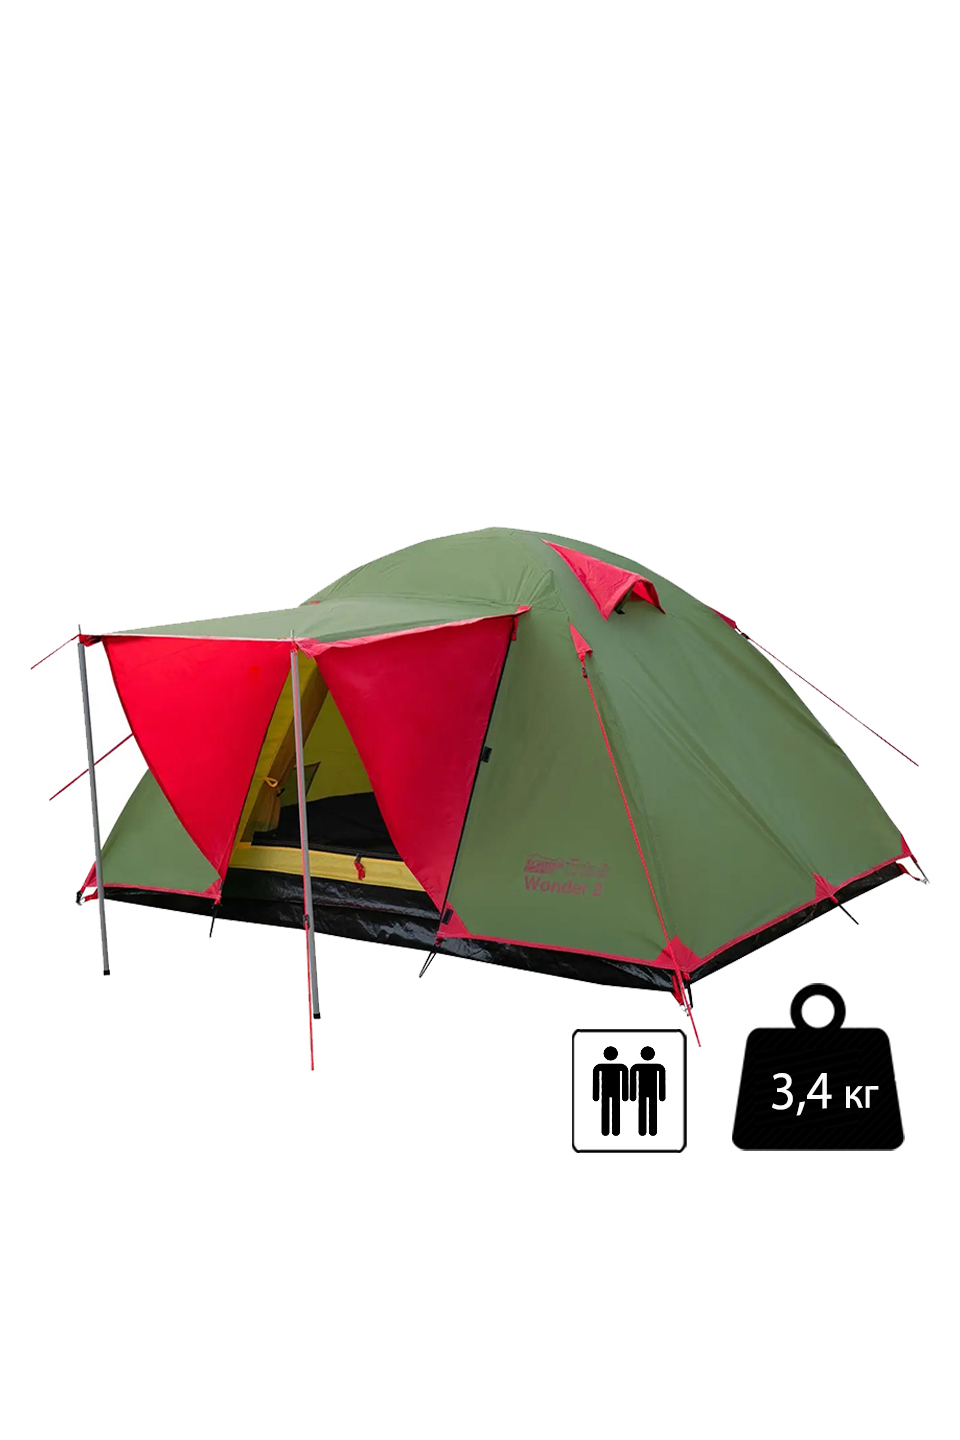 Палатка Tramp Lite Wonder 2 двухместная - TLT-005.06-olive